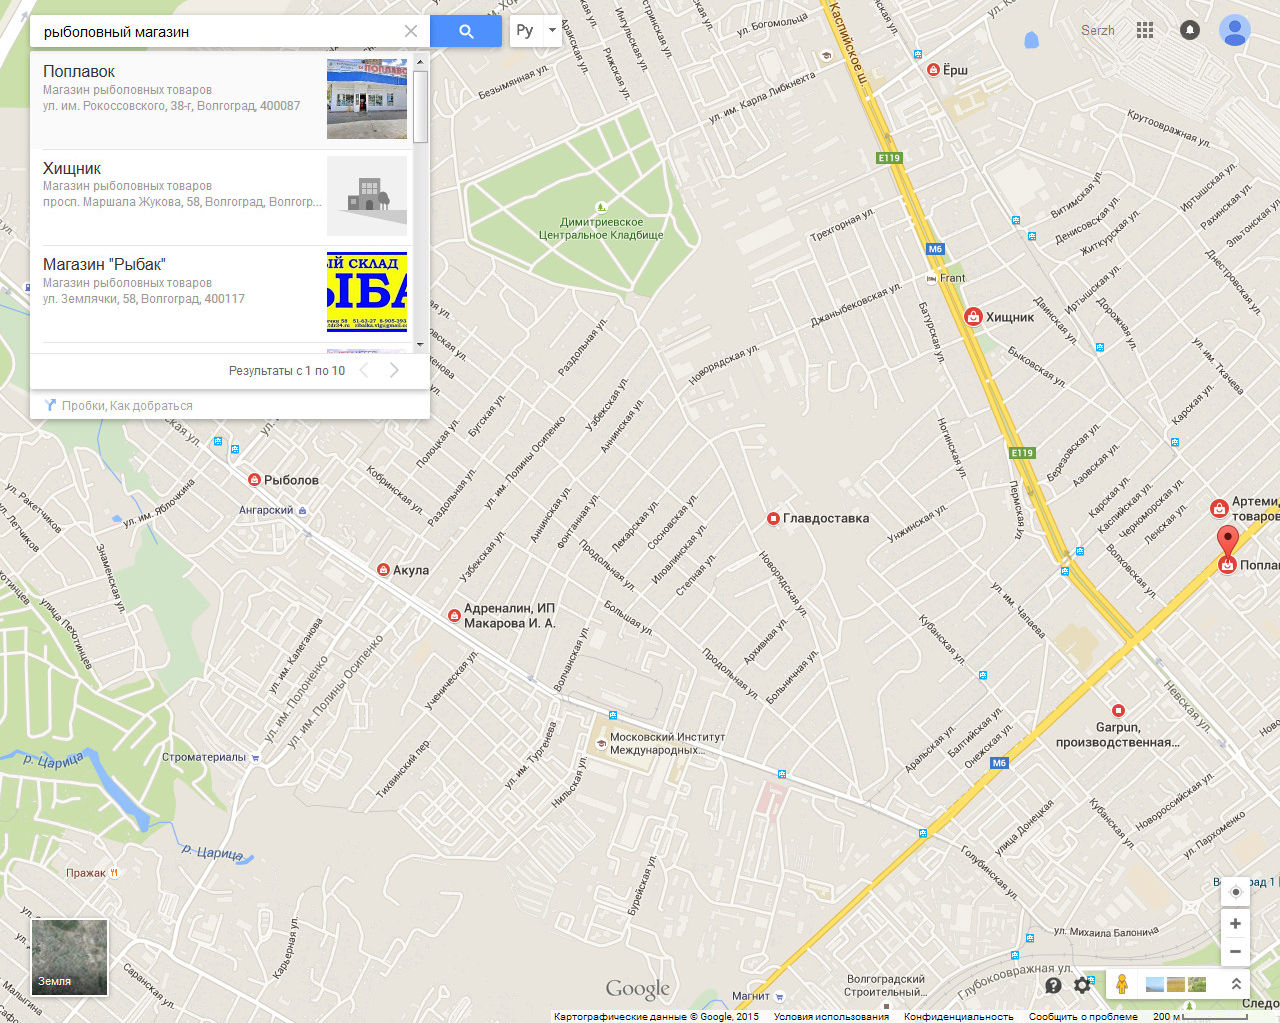 Результат поиска рыболовных магазинов на картах Google вблизи местонахождения